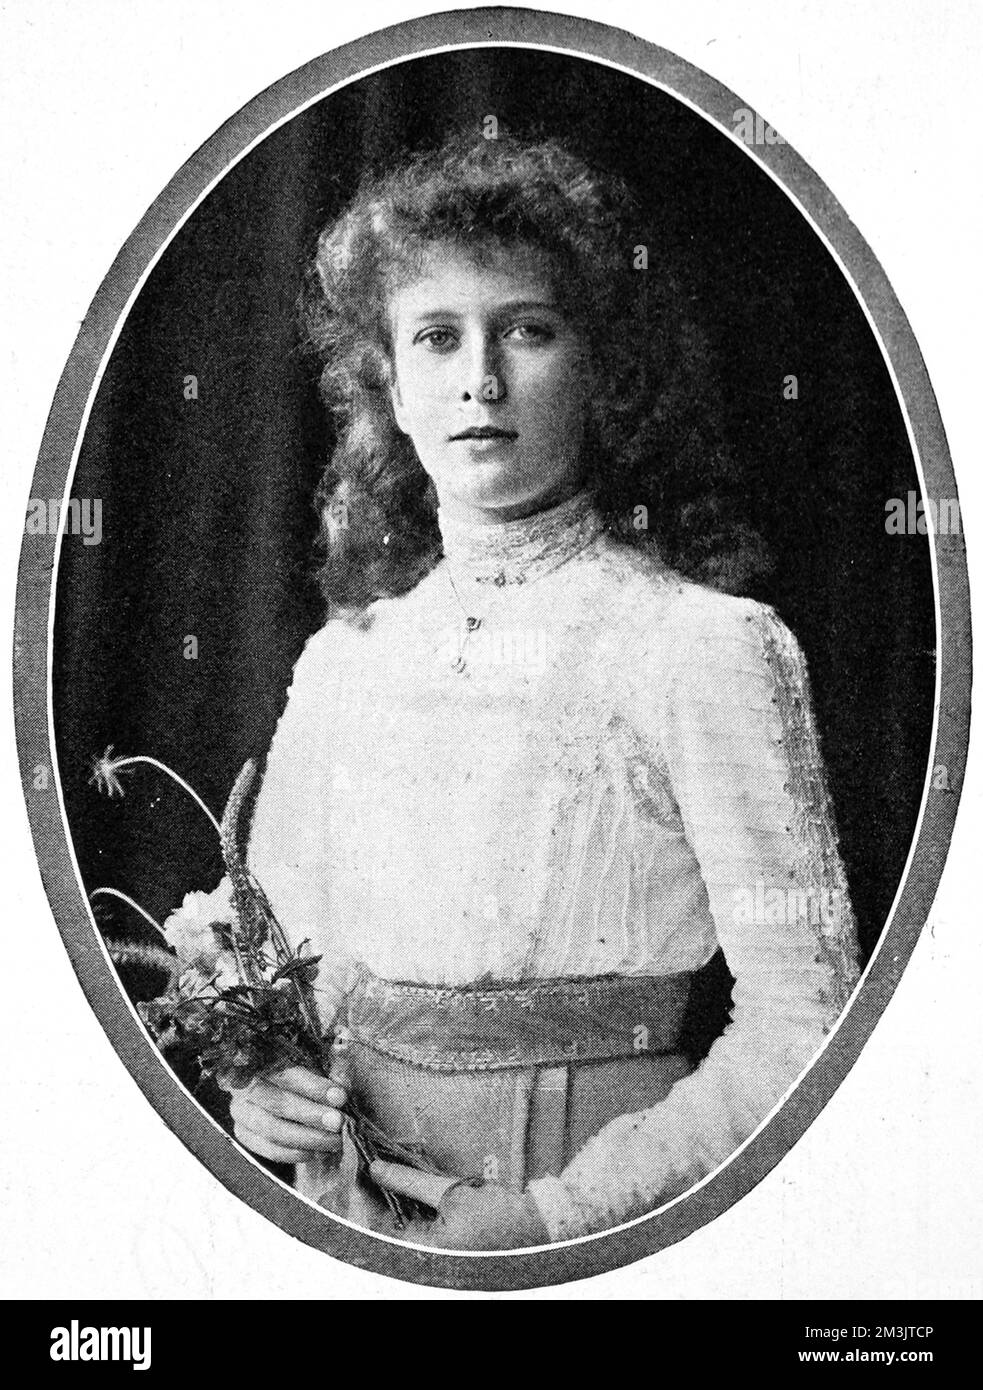 Princesse Mary (1897 - 1965 ans), troisième enfant et seule fille de George V et de la reine Mary à l'âge de treize ans. Née à Sandringham, elle a hérité du titre de princesse Royale après la mort de sa tante, la princesse Louise, en 1931. Elle a suivi une formation en tant qu'infirmière en 1918 et a travaillé à l'hôpital Great Ormond Street. Elle s'est également intéressée activement au mouvement des Guides, aux VAD et aux filles terrestres. Elle épousa Henry, le vicomte Lascelles en 1922 et eut deux fils. Banque D'Images